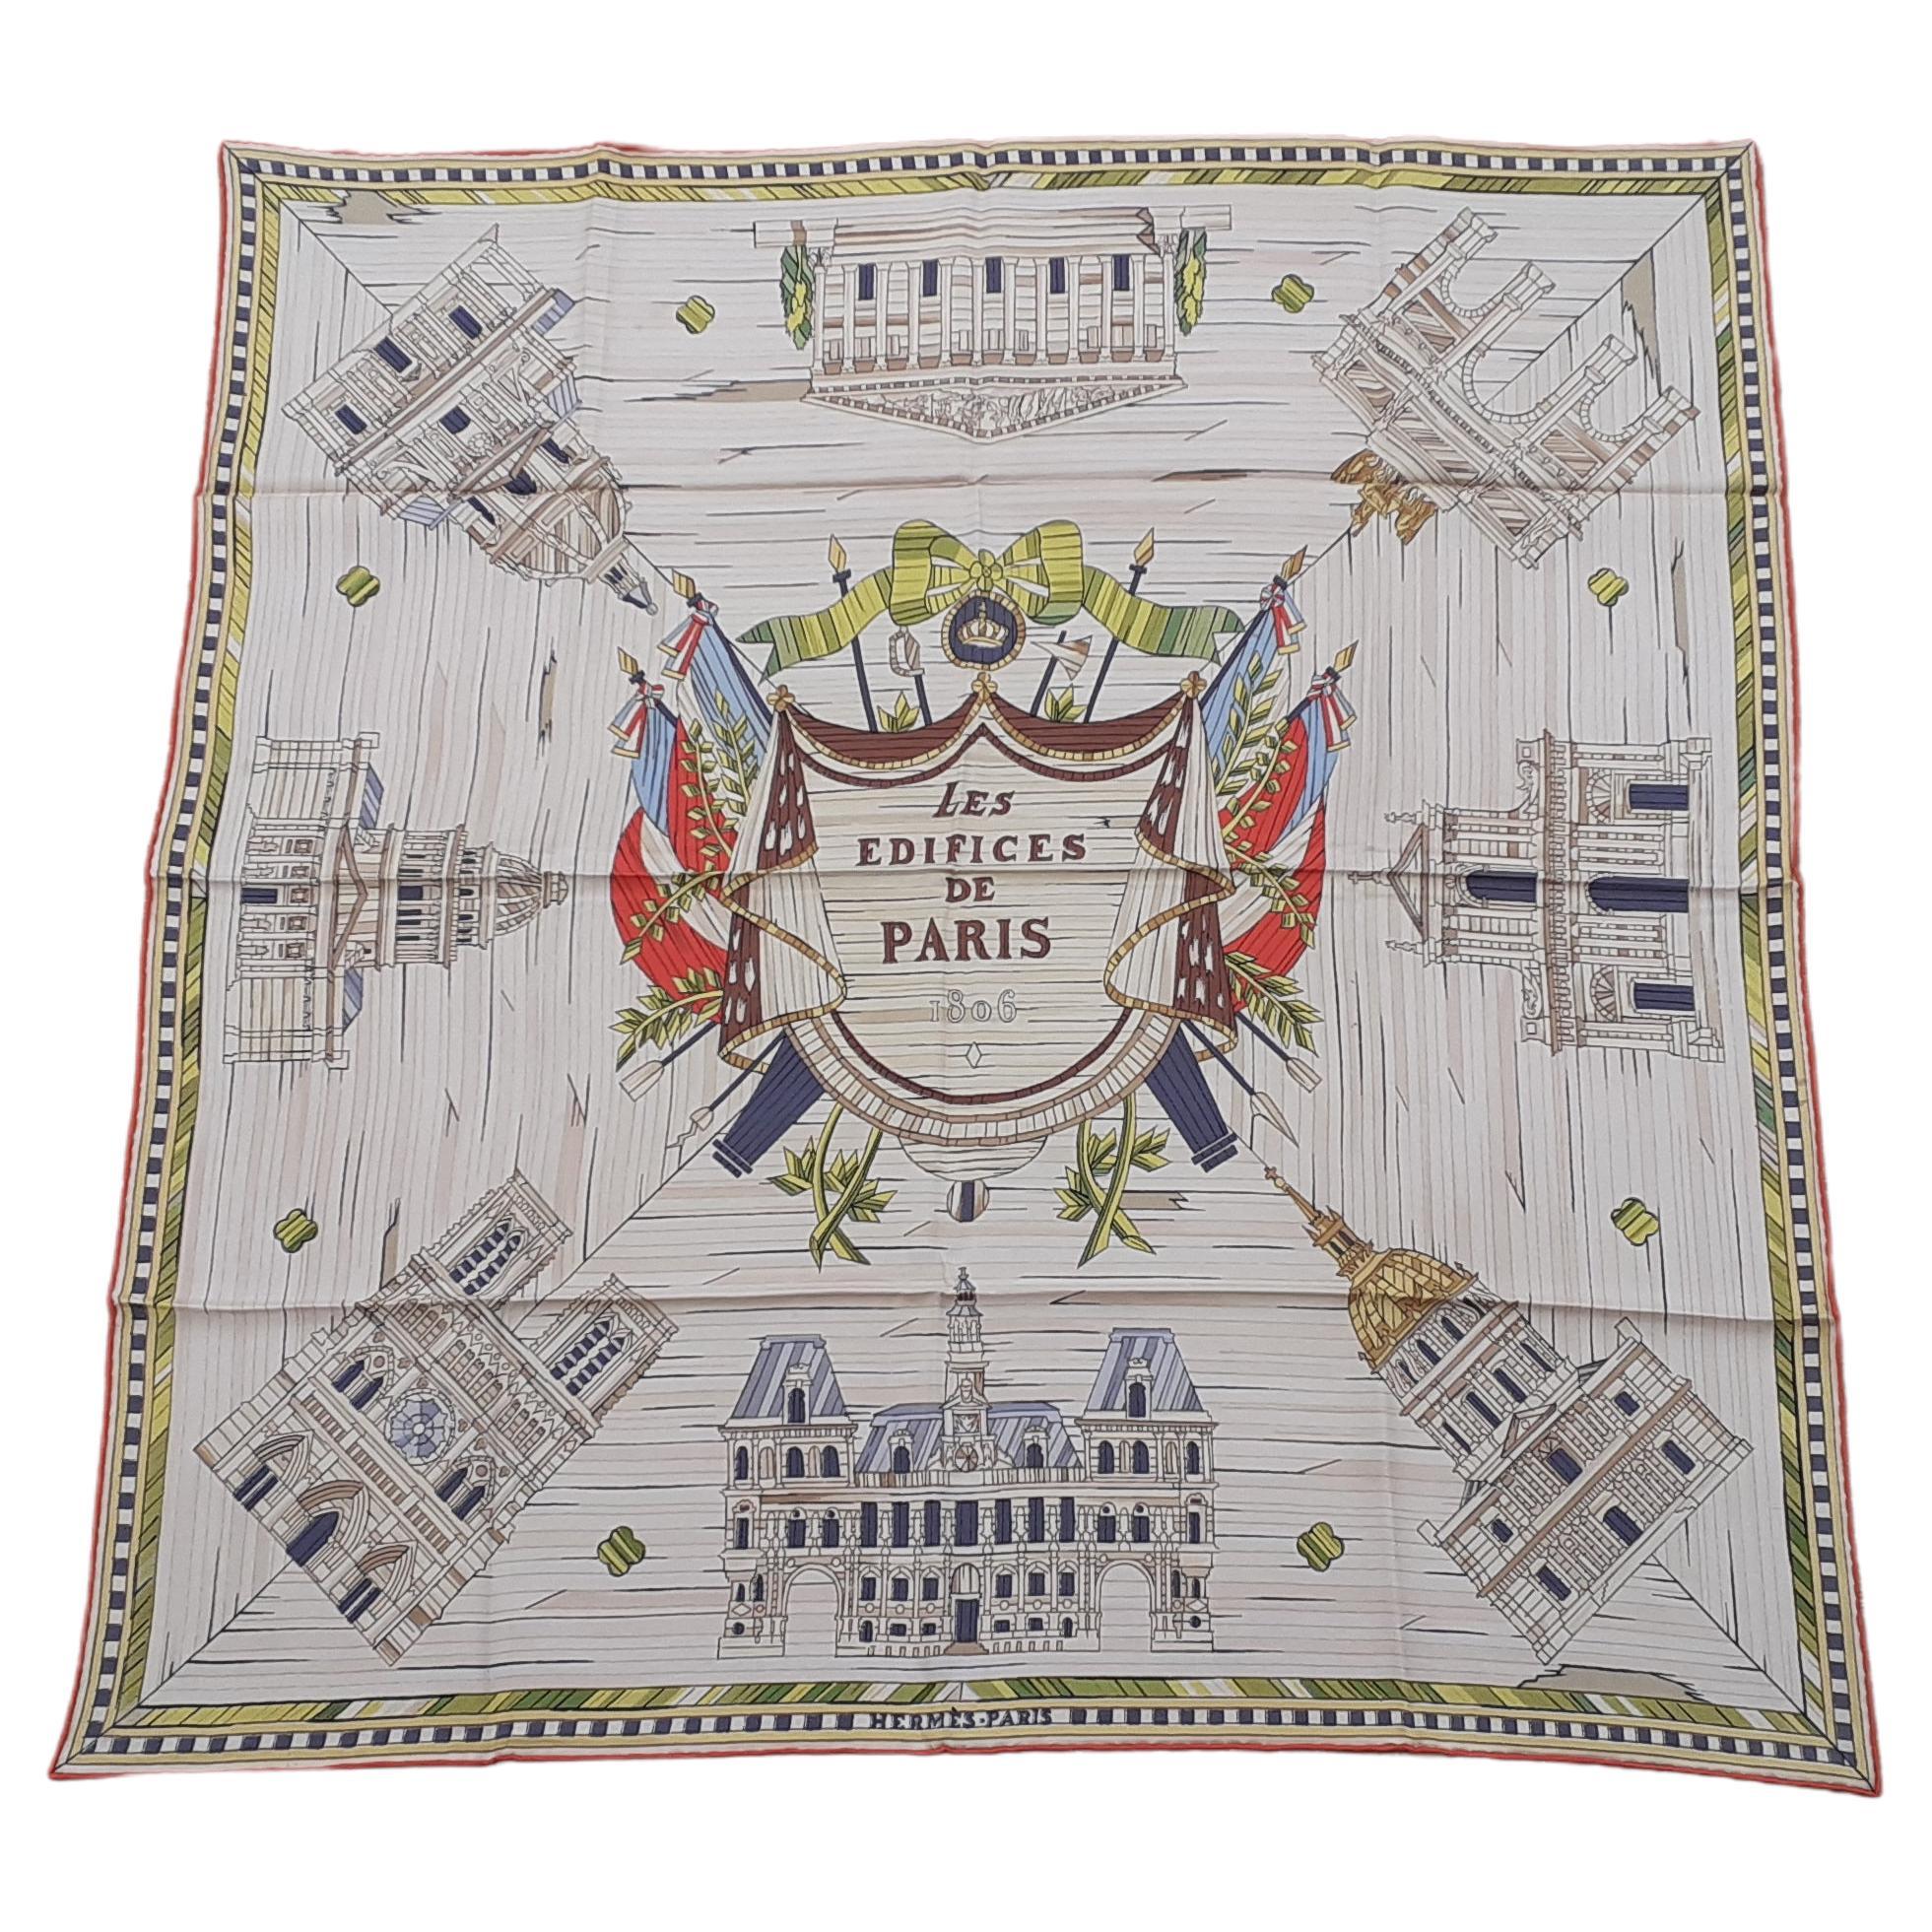 Exceptional Hermès Vintage Silk Scarf Les Edifices de Paris 1806 Grygkar RARE